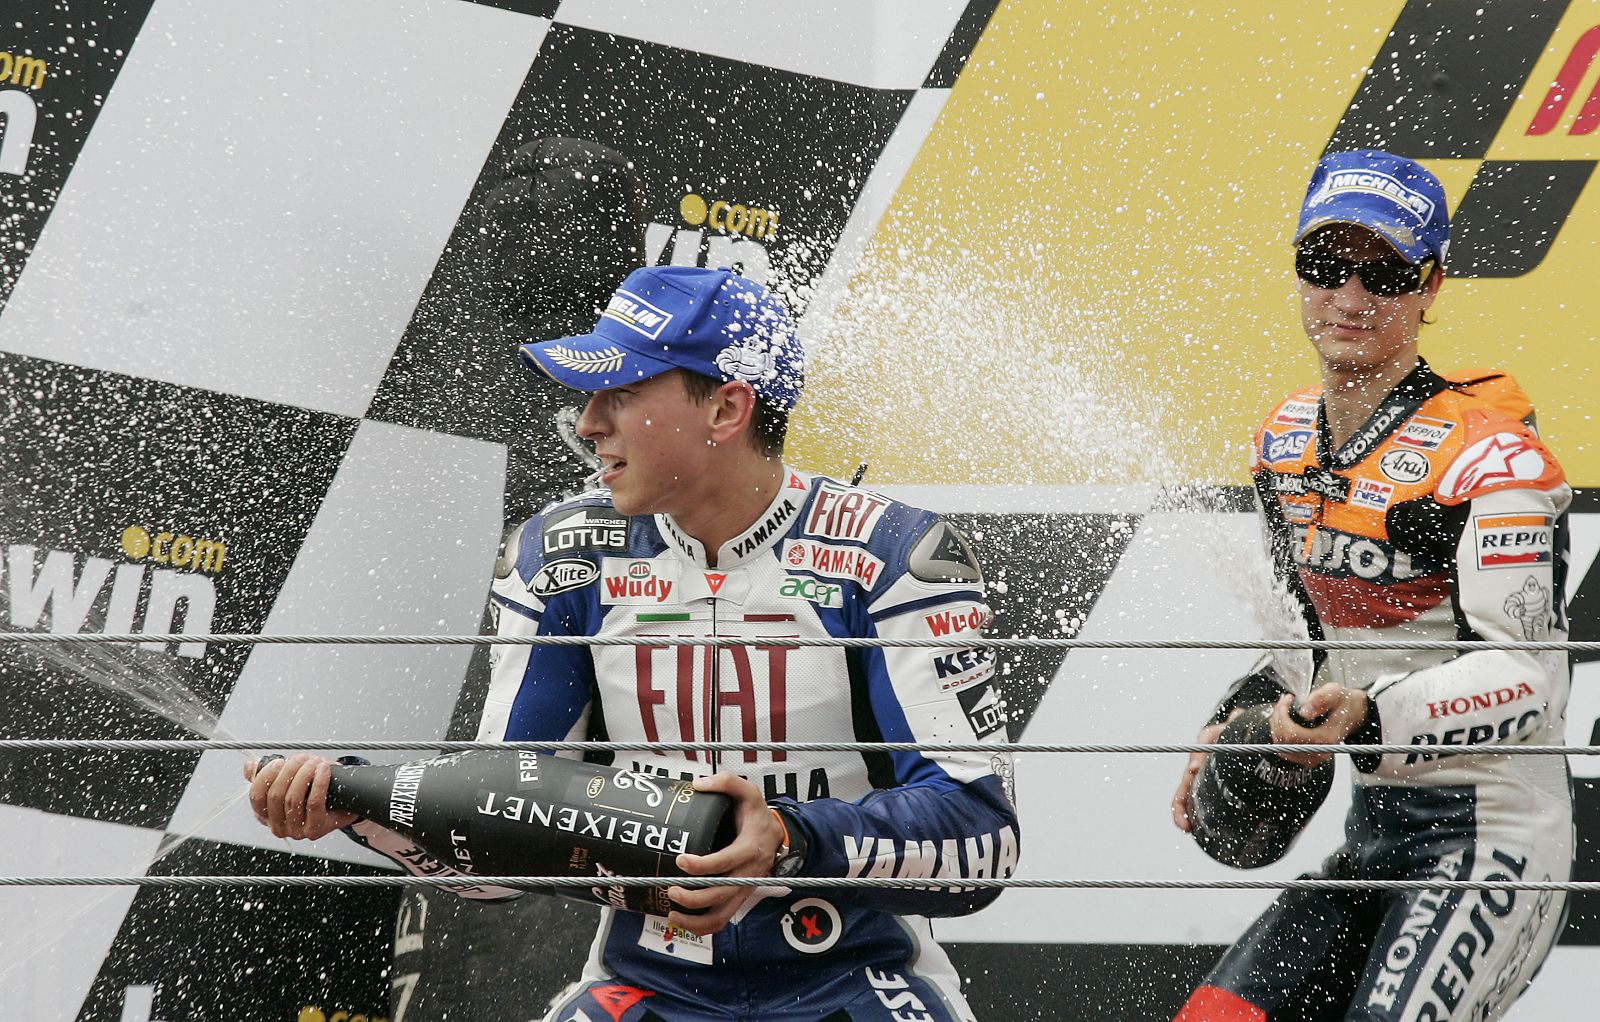 Lorenzo y Pedrosa encabezan la clasificación del Mundial de MotoGP con 61 puntos